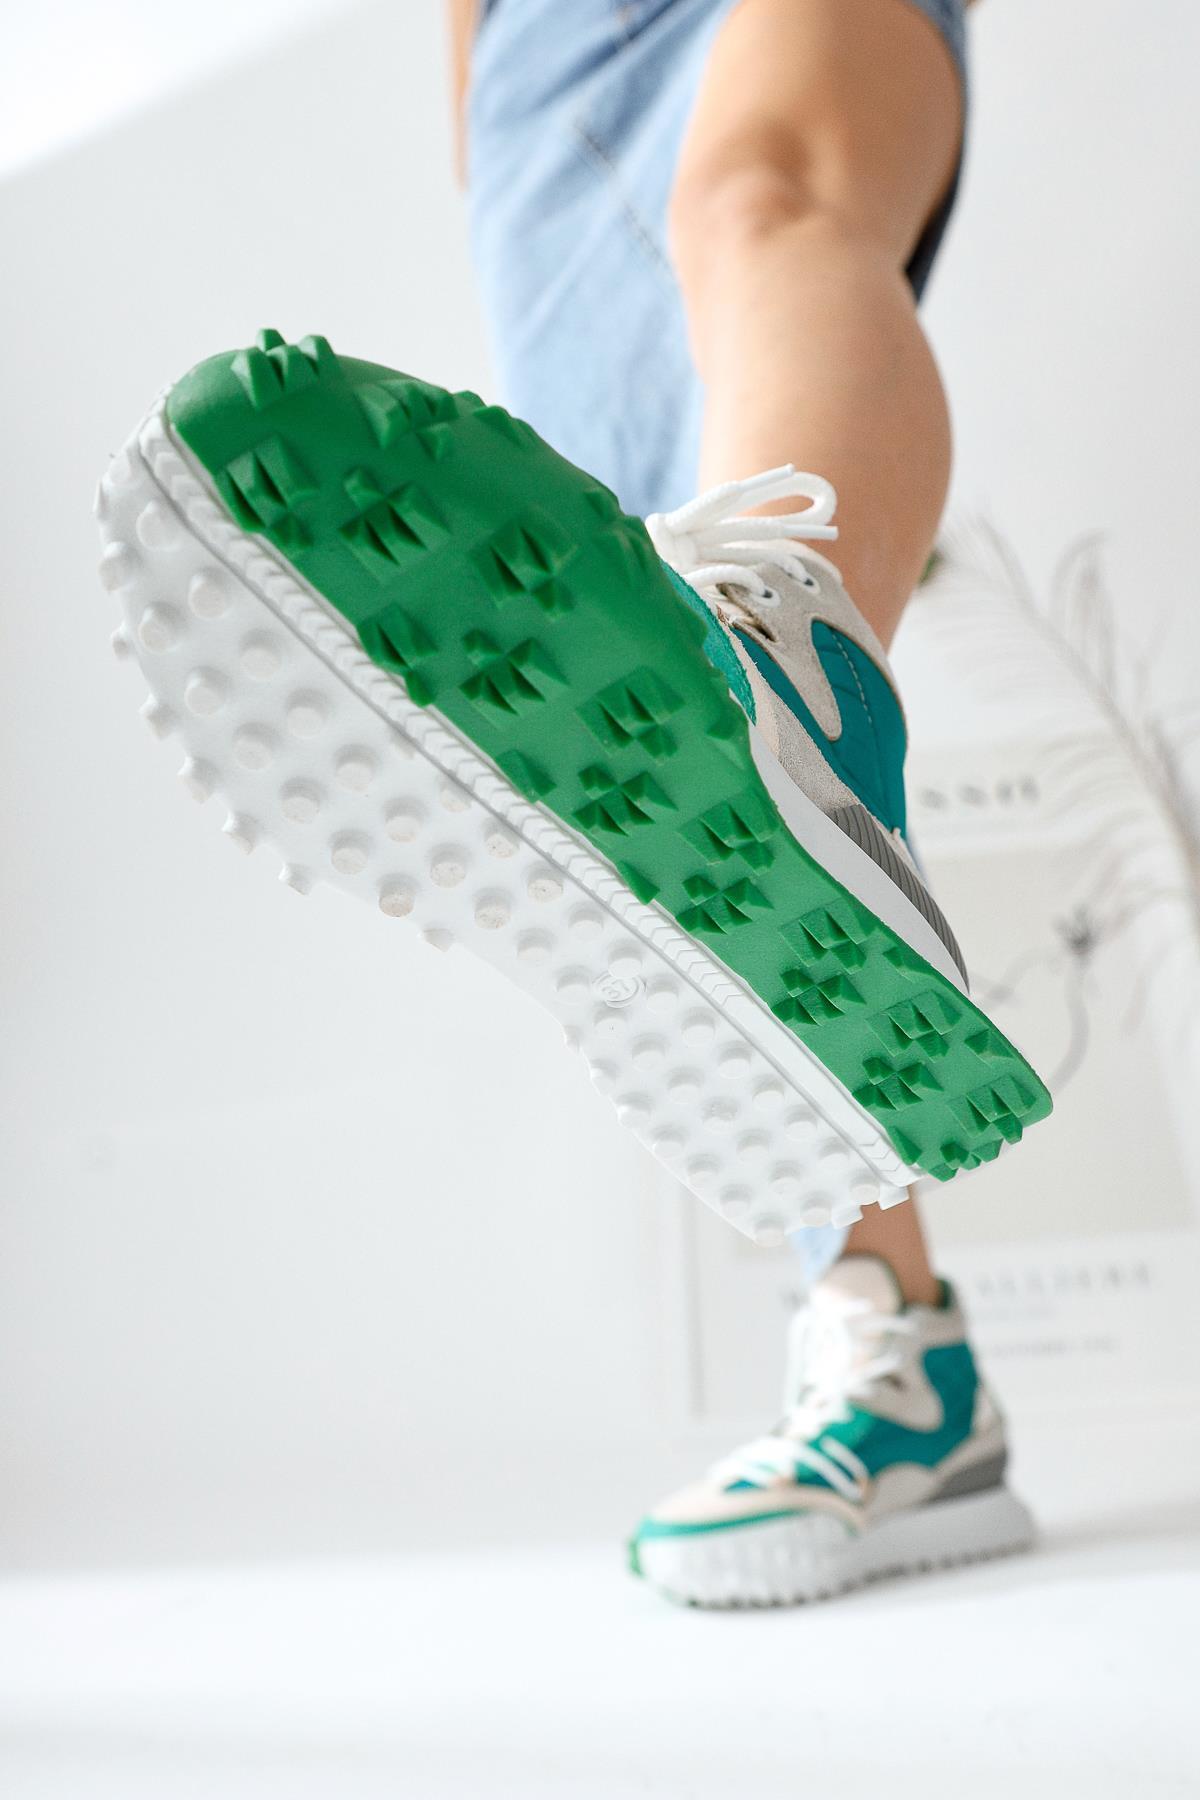 Gertrude Yeşil Gri Renkli Bağcıklı Spor Bot | Limoya.com ile Modayı Keşfet!